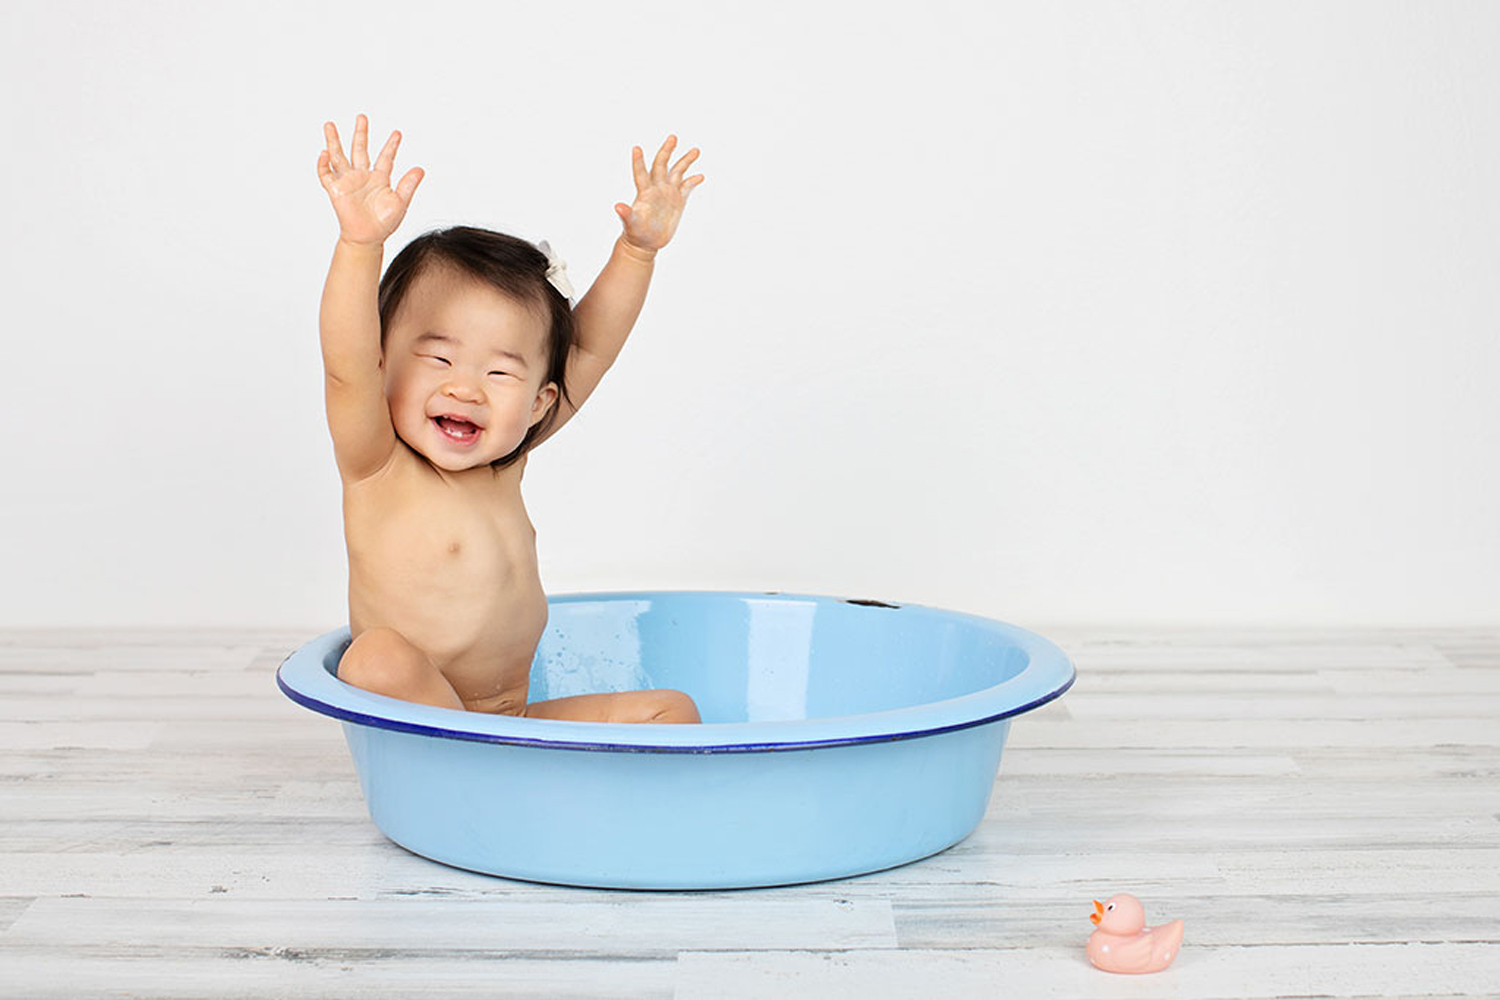 A baby celebrates in a bathtub.